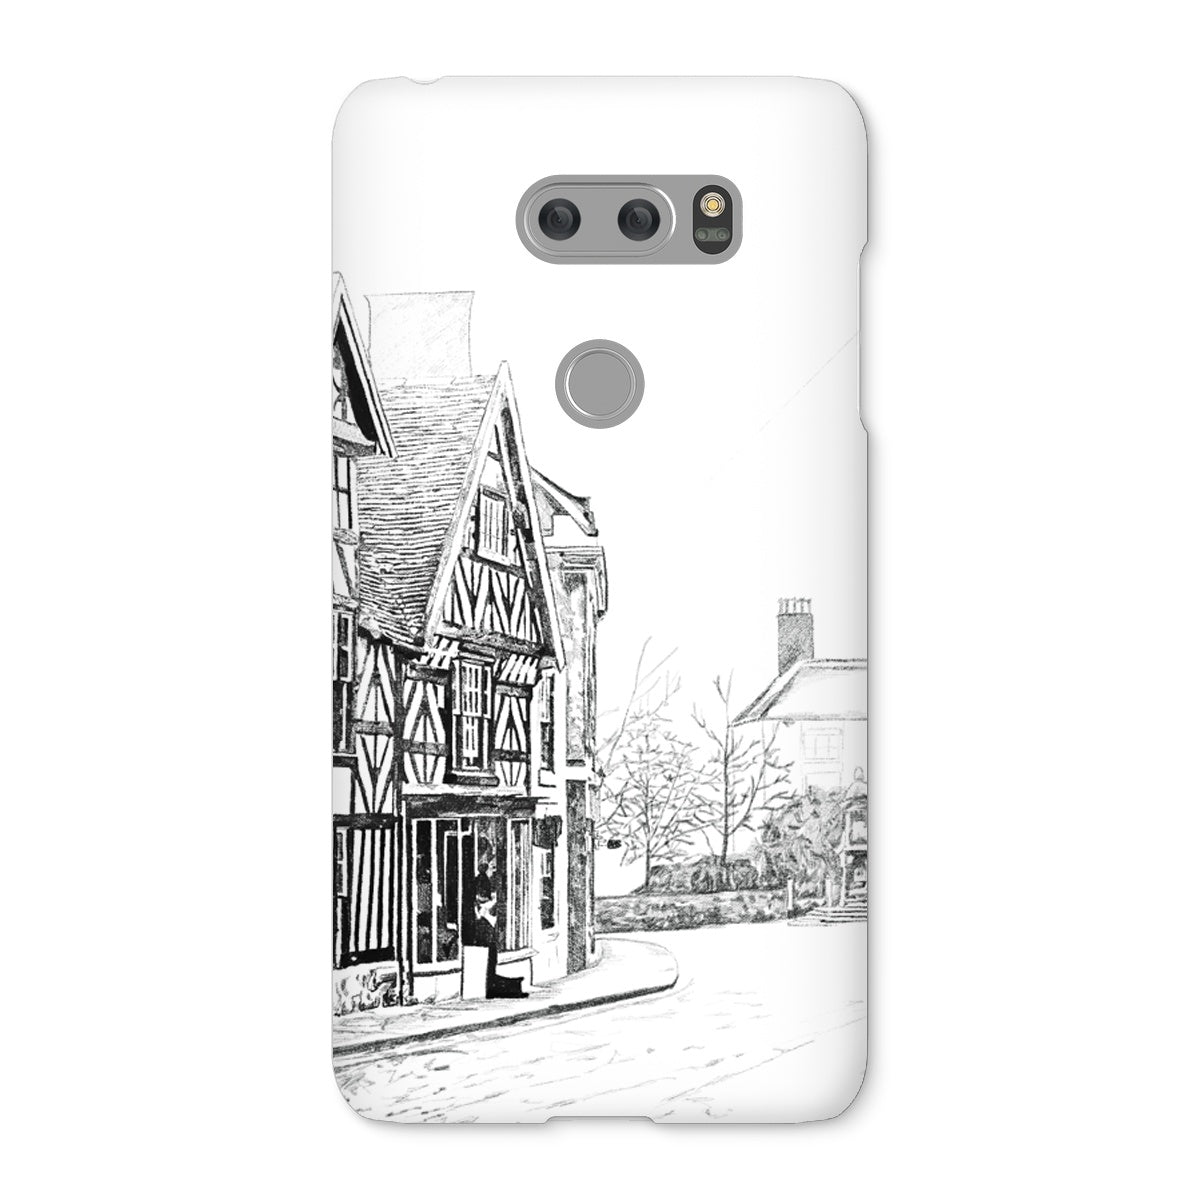 The Tudor House, Cheadle Snap Phone Case